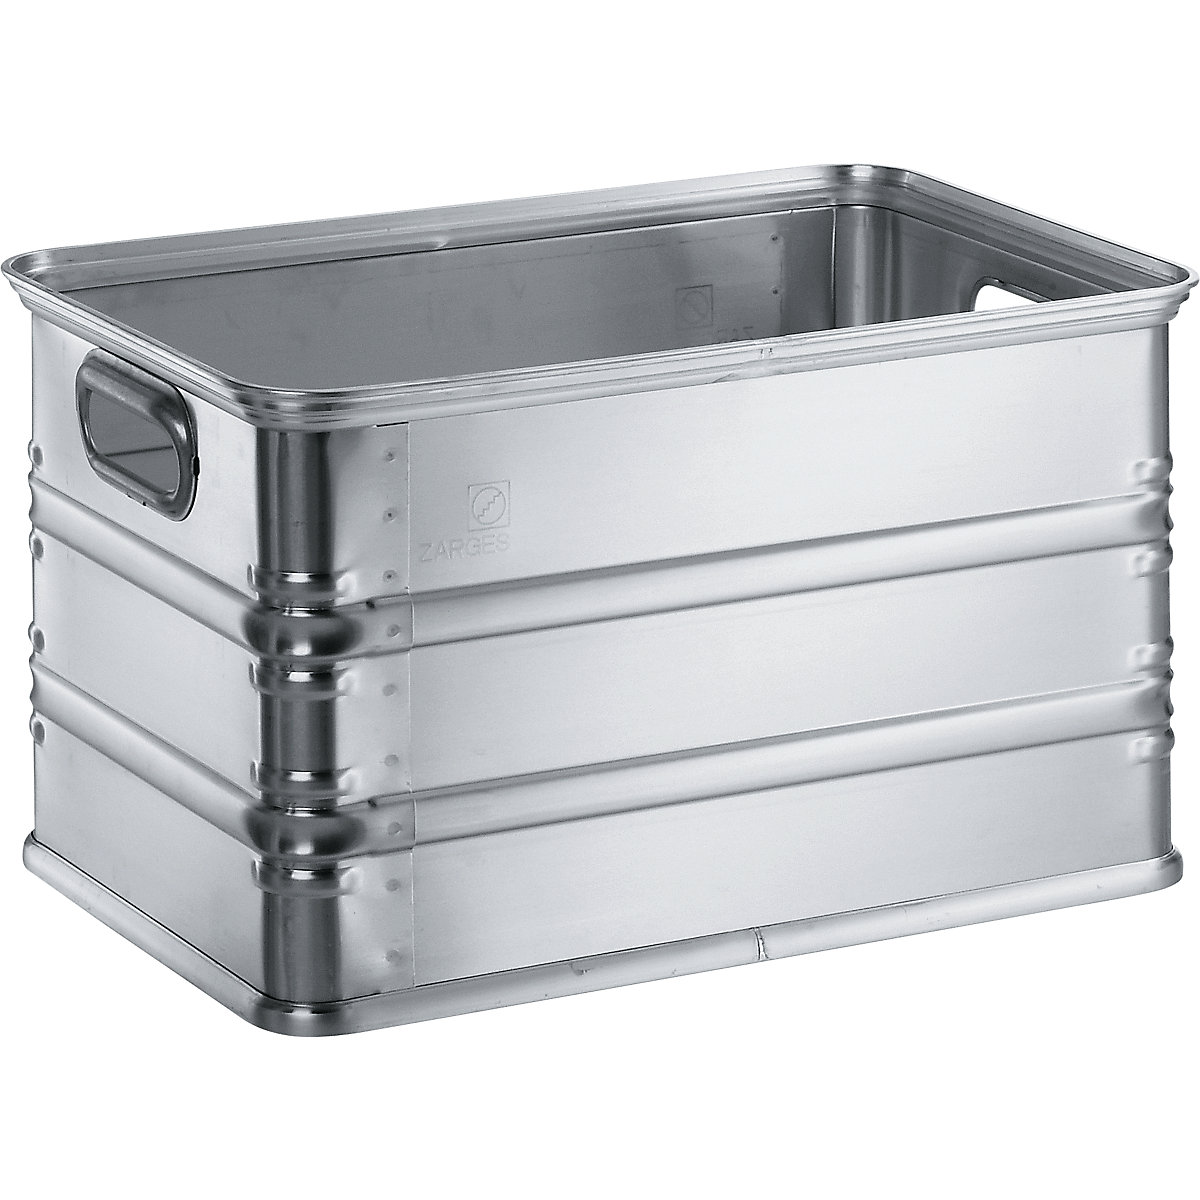 Caja de transporte y caja apilable de aluminio - ZARGES